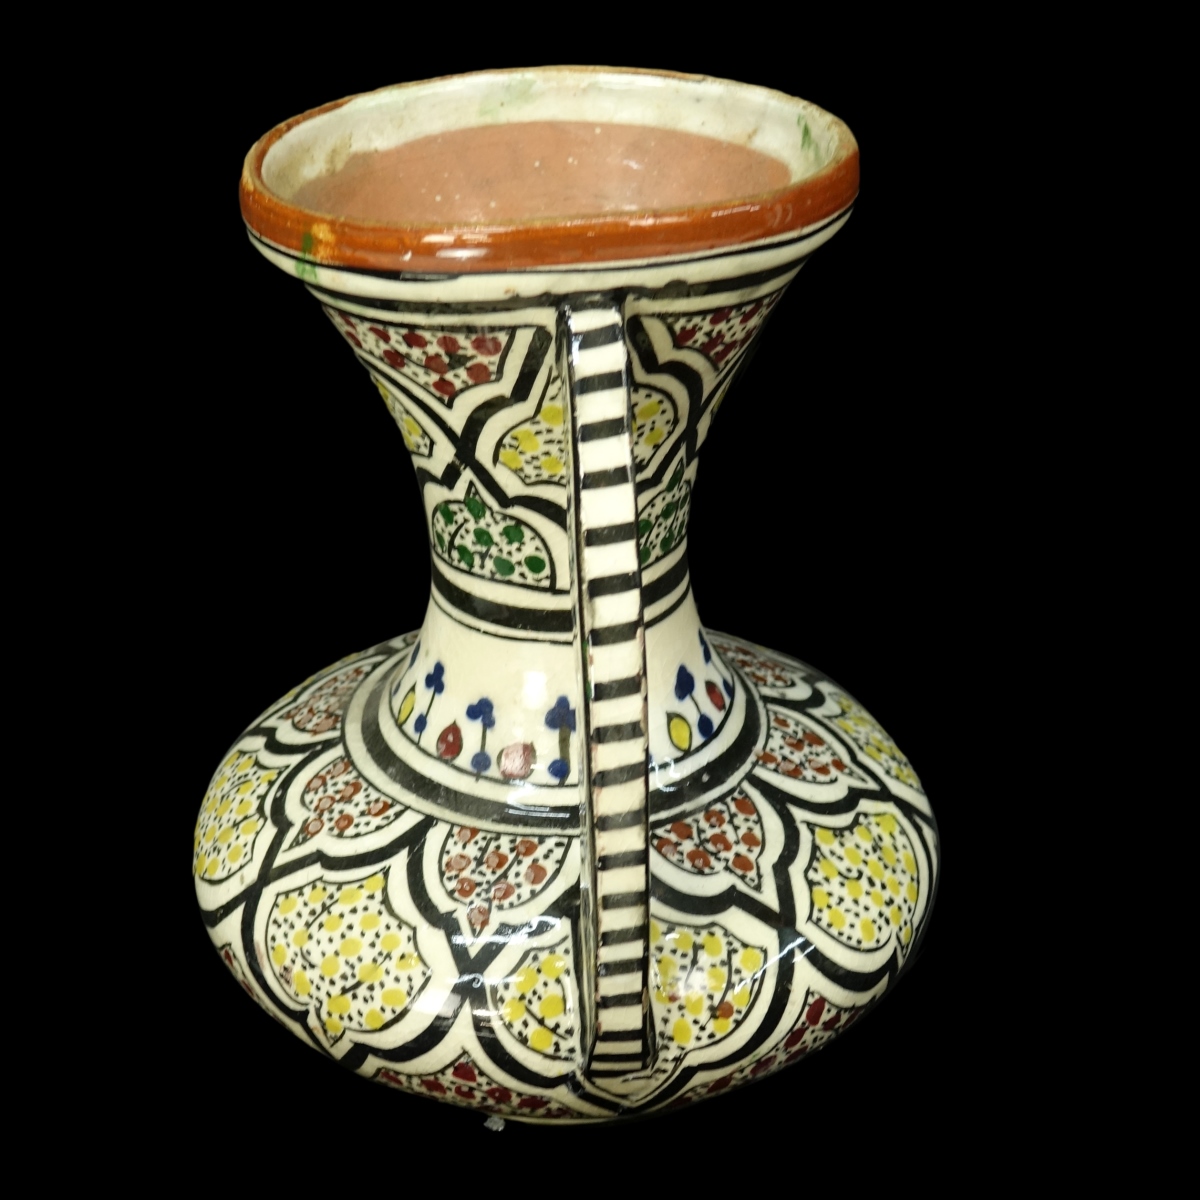 Middle Eastern Vase